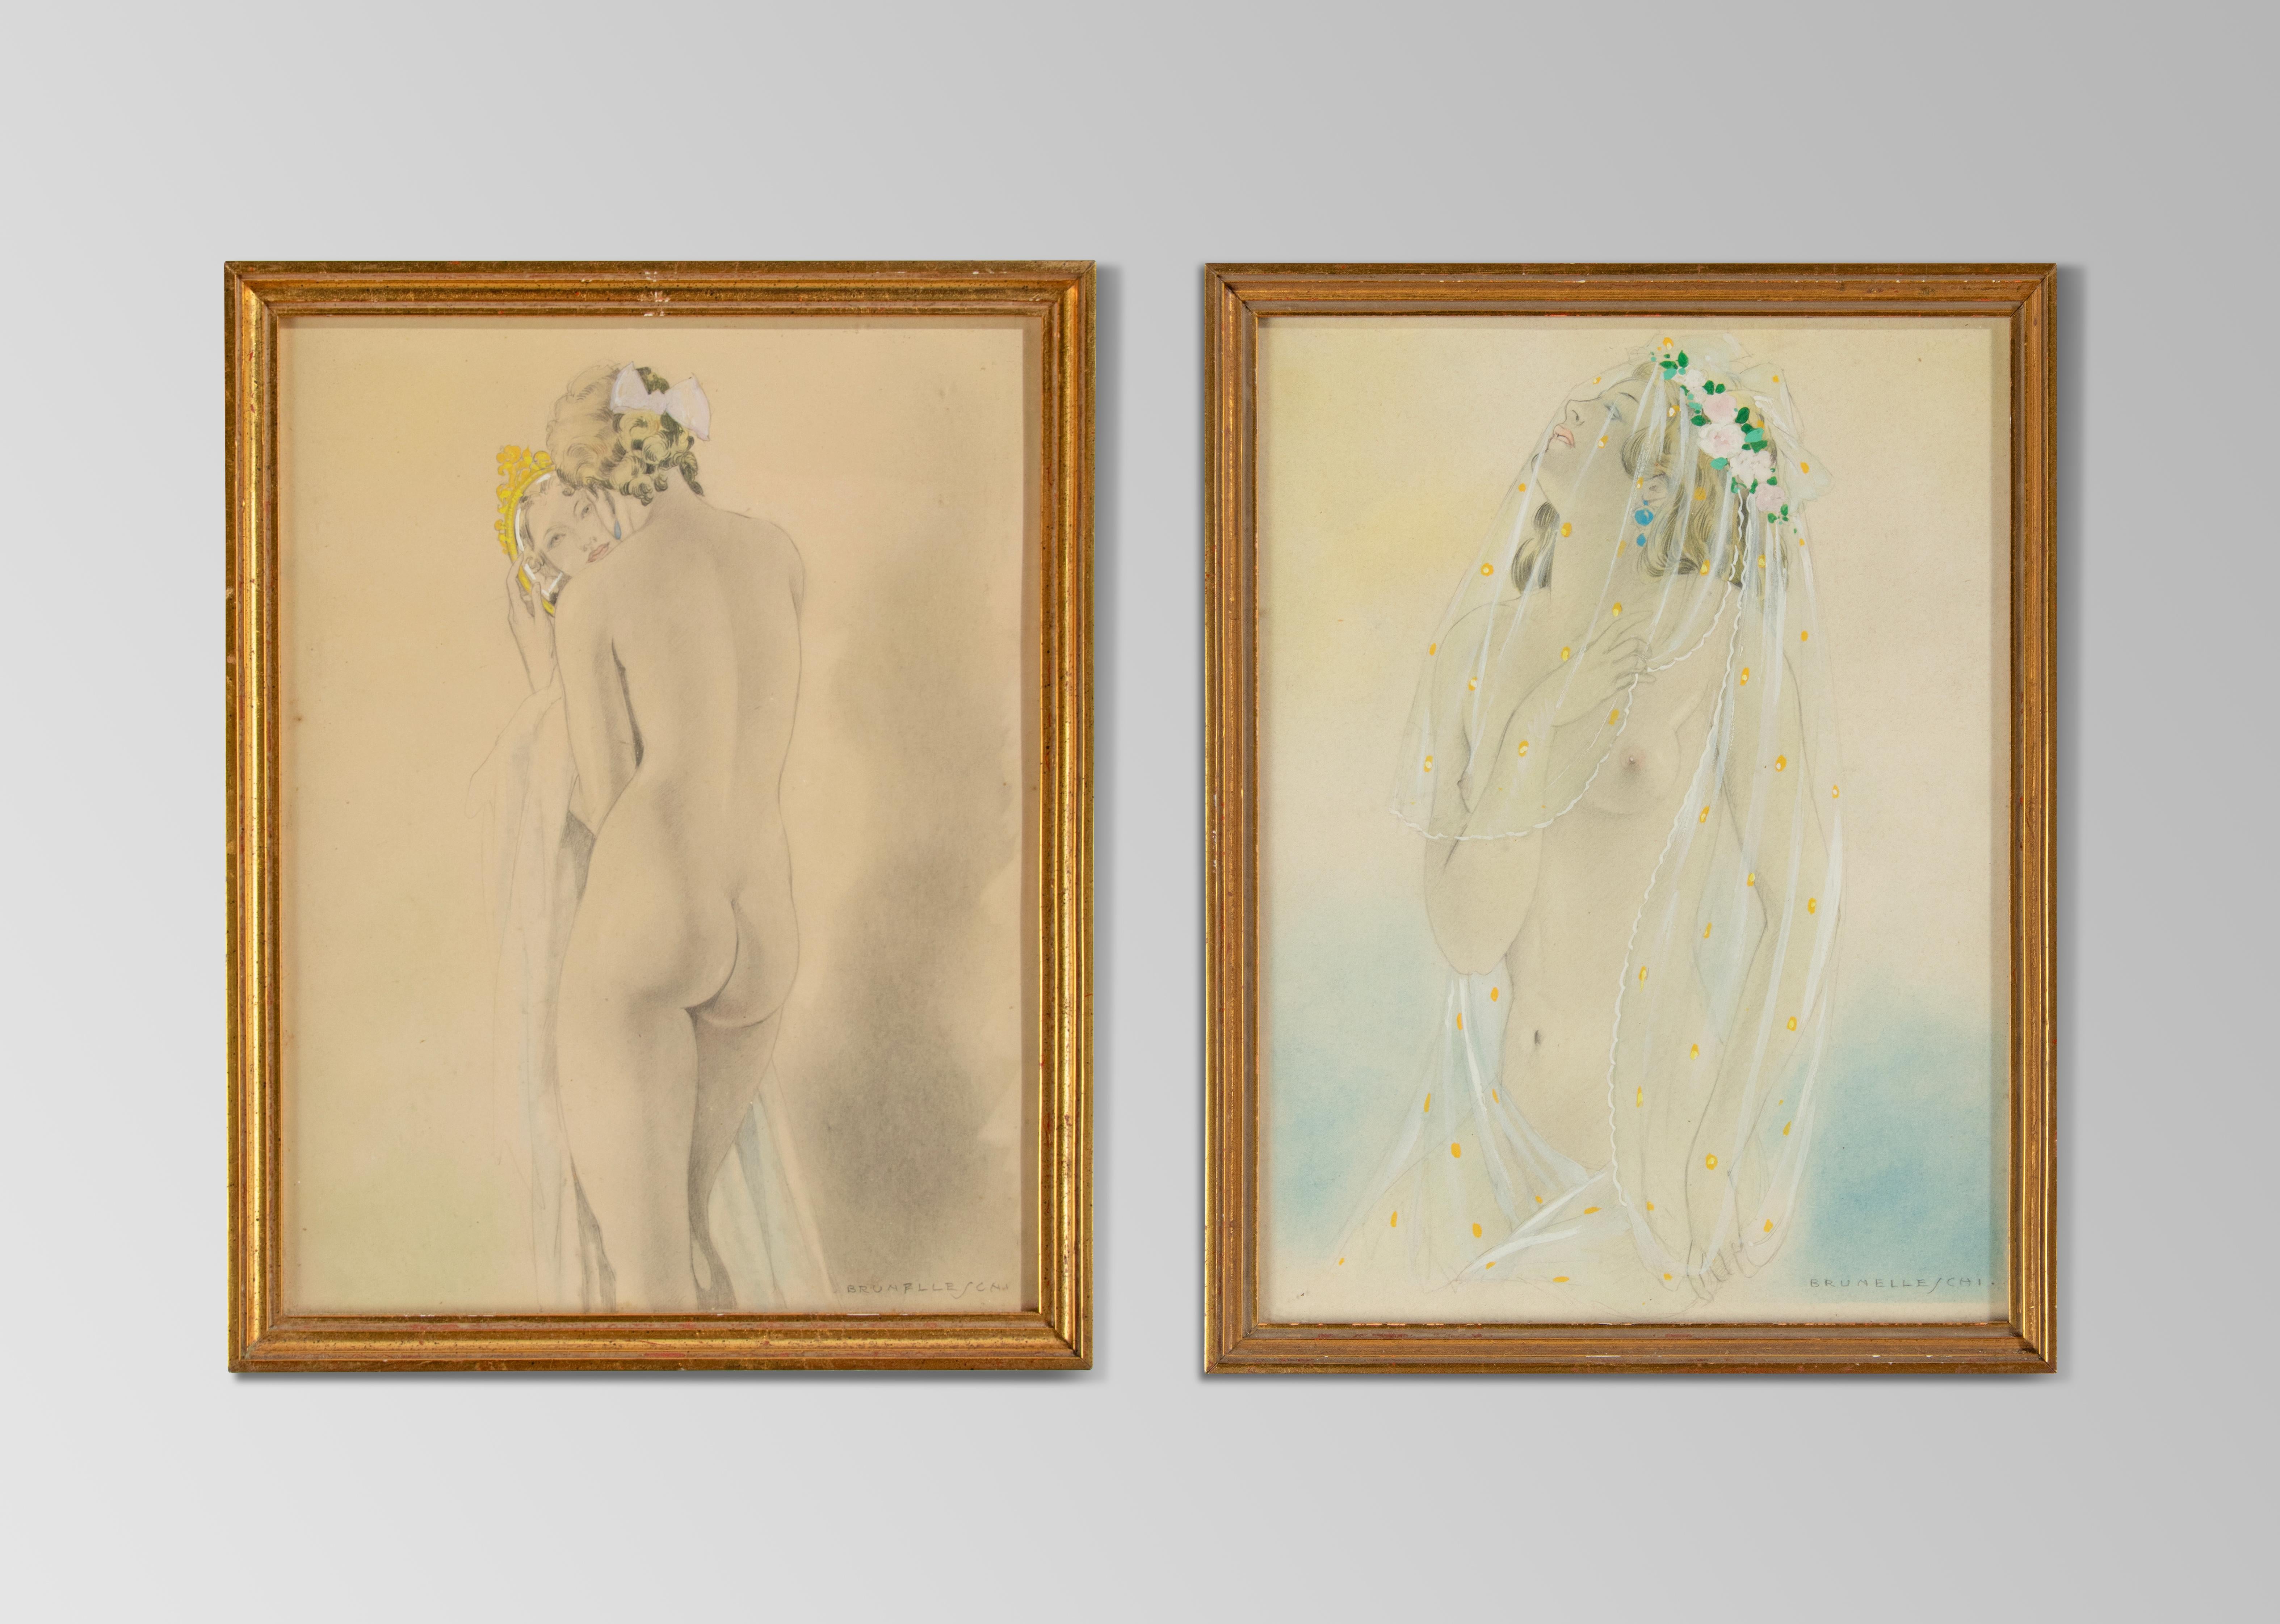 Quelques belles œuvres d'art de l'artiste italien Umberto Brunelleschi. Il s'agit de nus féminins, d'apparence légèrement érotique avec un bel étalage de tissus transparents.
Dimensions du cadre : 25,5 x 20 cm
Dimensions papier : 23,5 x 18